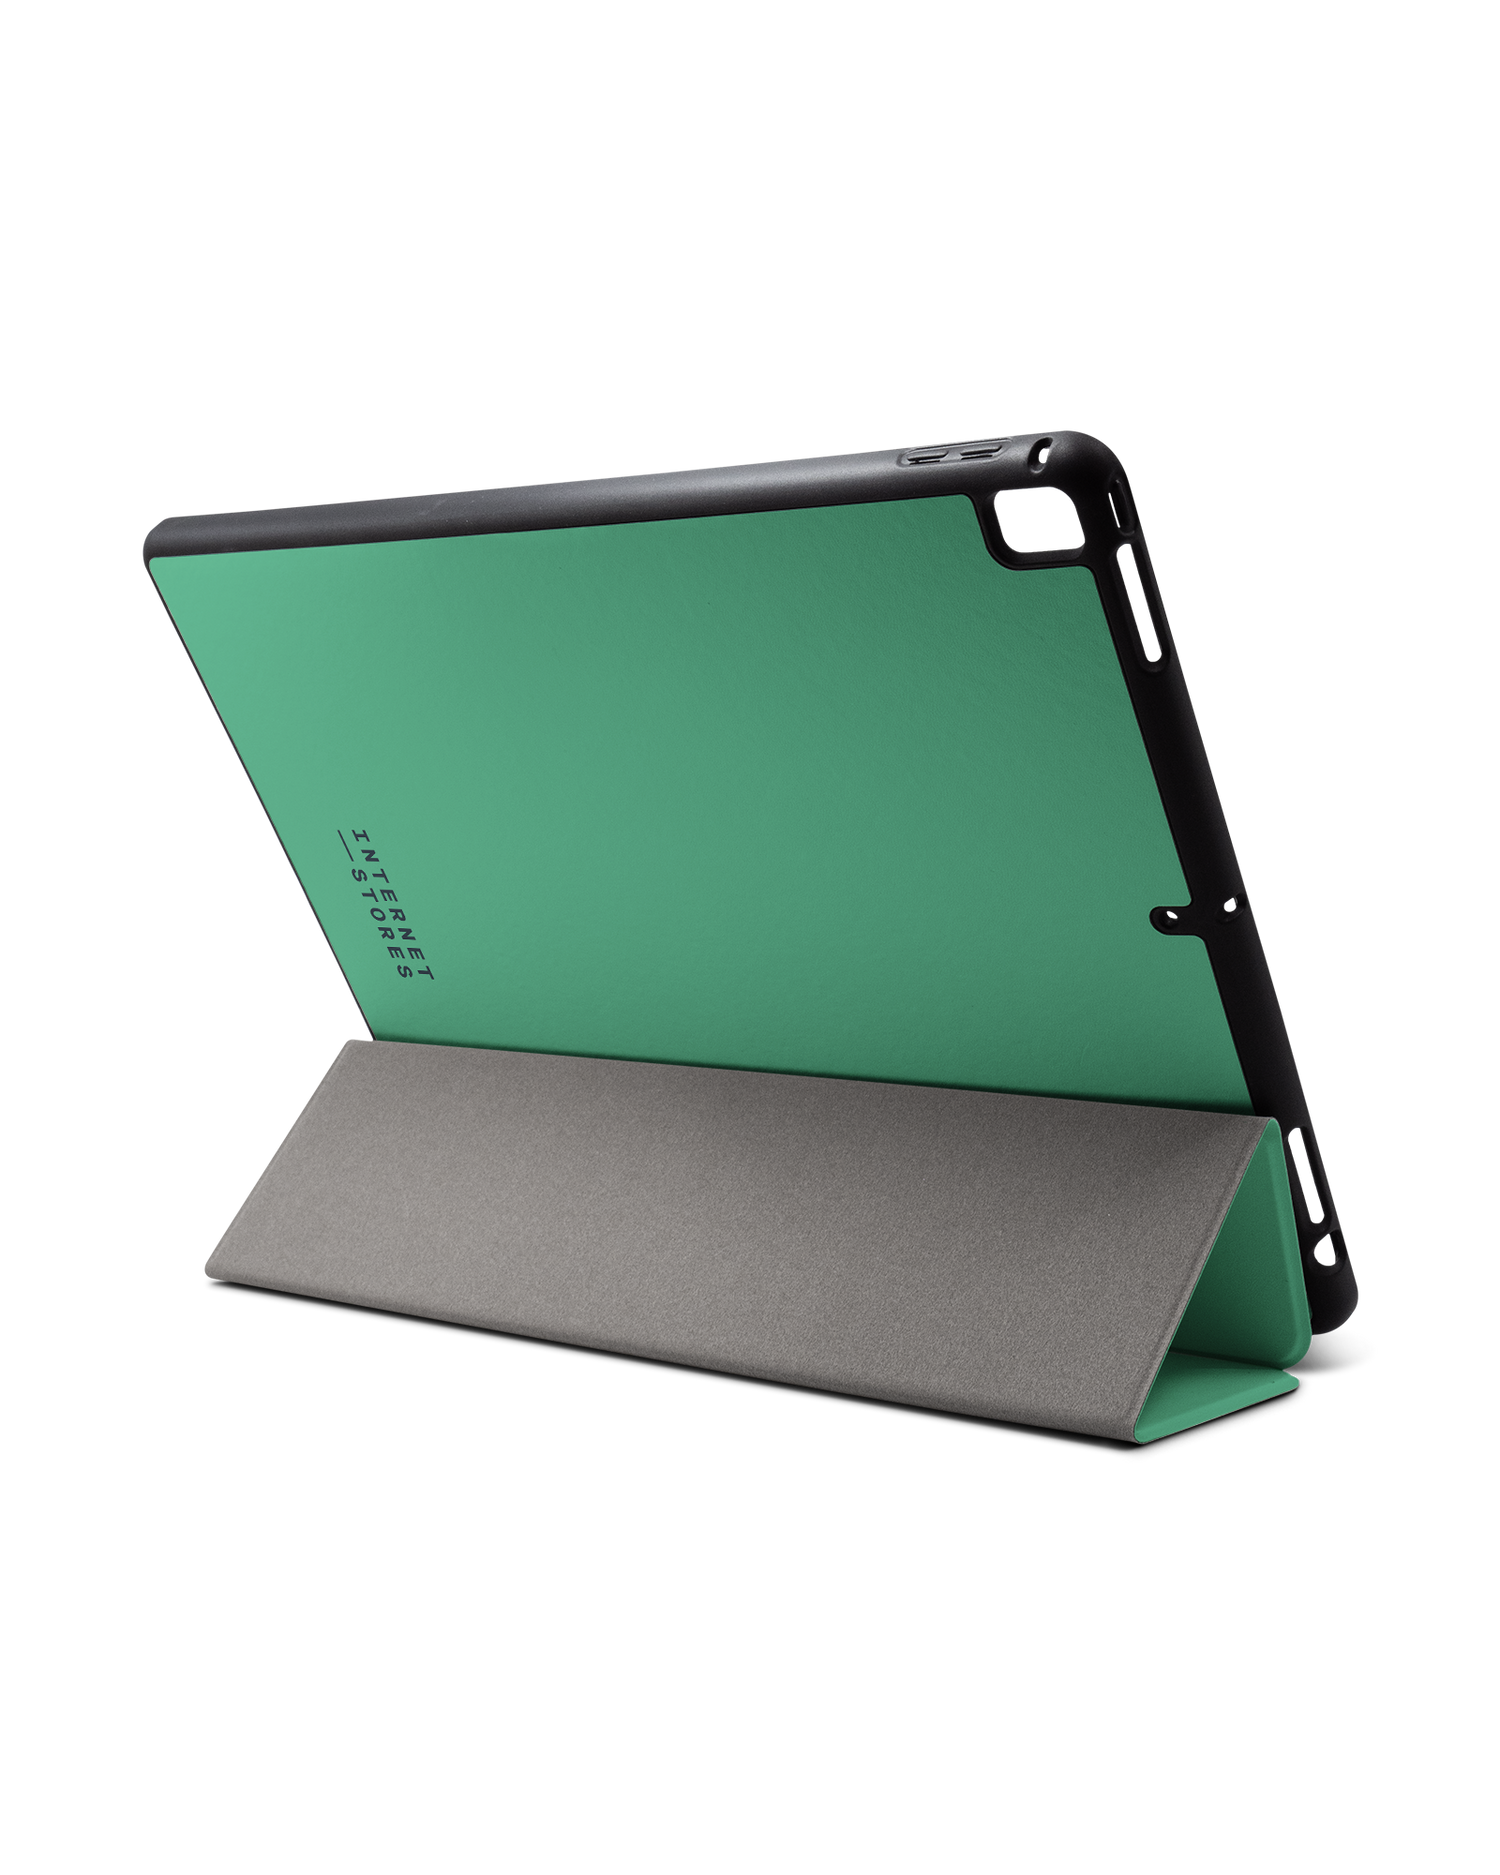 ISG Neon Green iPad Hülle mit Stifthalter für Apple iPad Pro 2 12.9'' (2017): Aufgestellt im Querformat von hinten